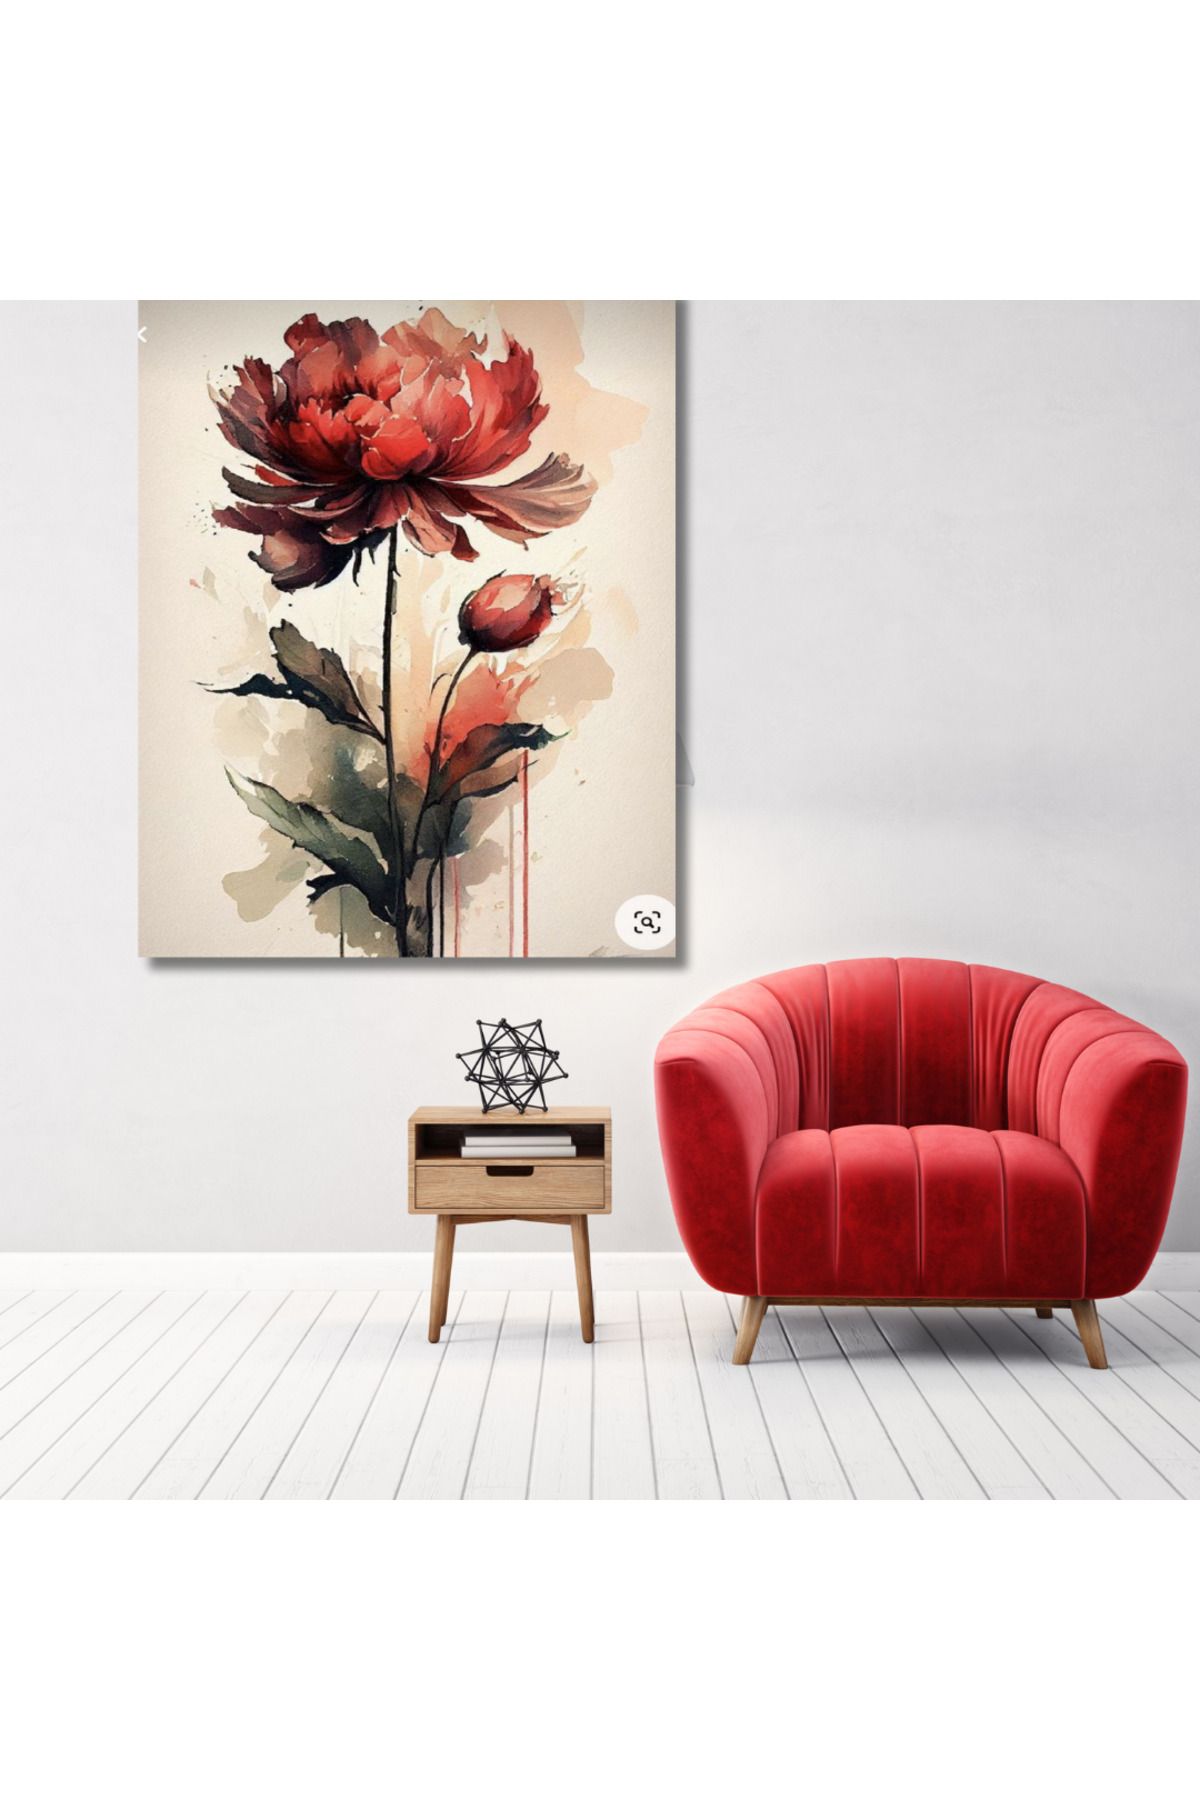 LİLYHOBBYLAND Sayılarla Boyama Hobi Seti 40x50 cm (Çerçeveli- Renkli Baskılı): Kırmızı Lotus Çiçeği